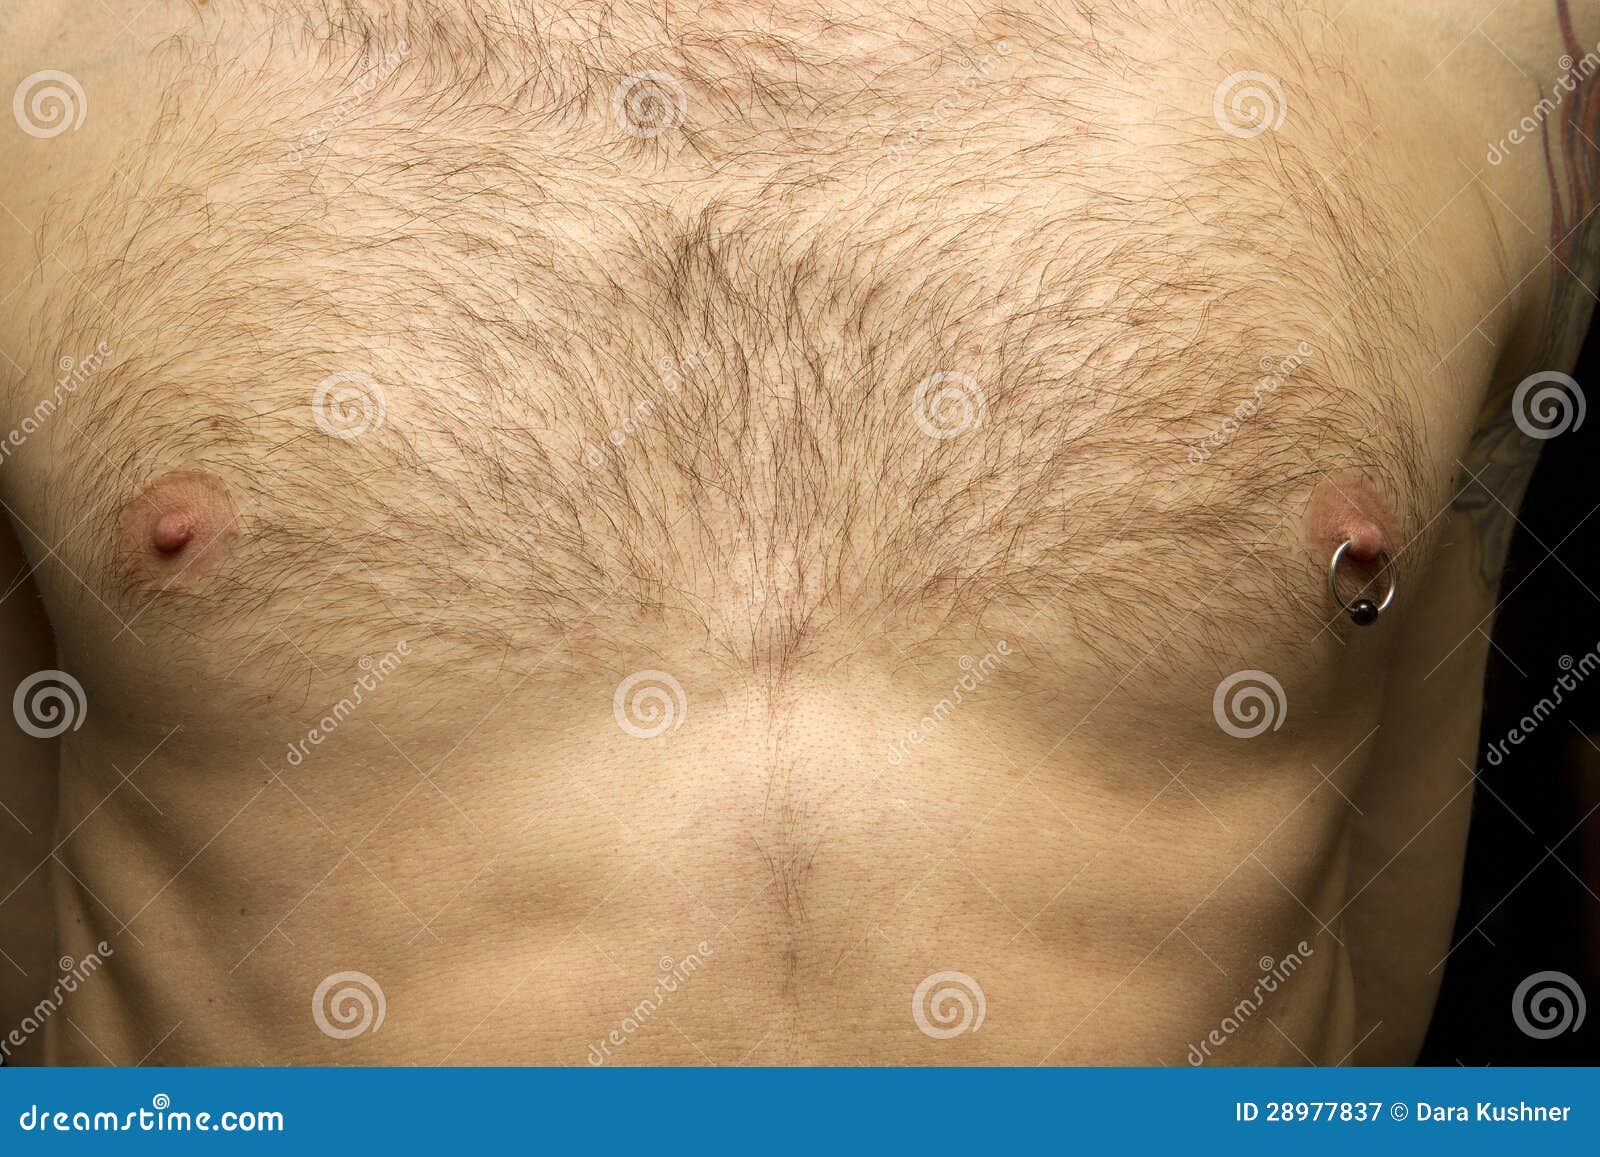 мужская грудь с сосками фото 48